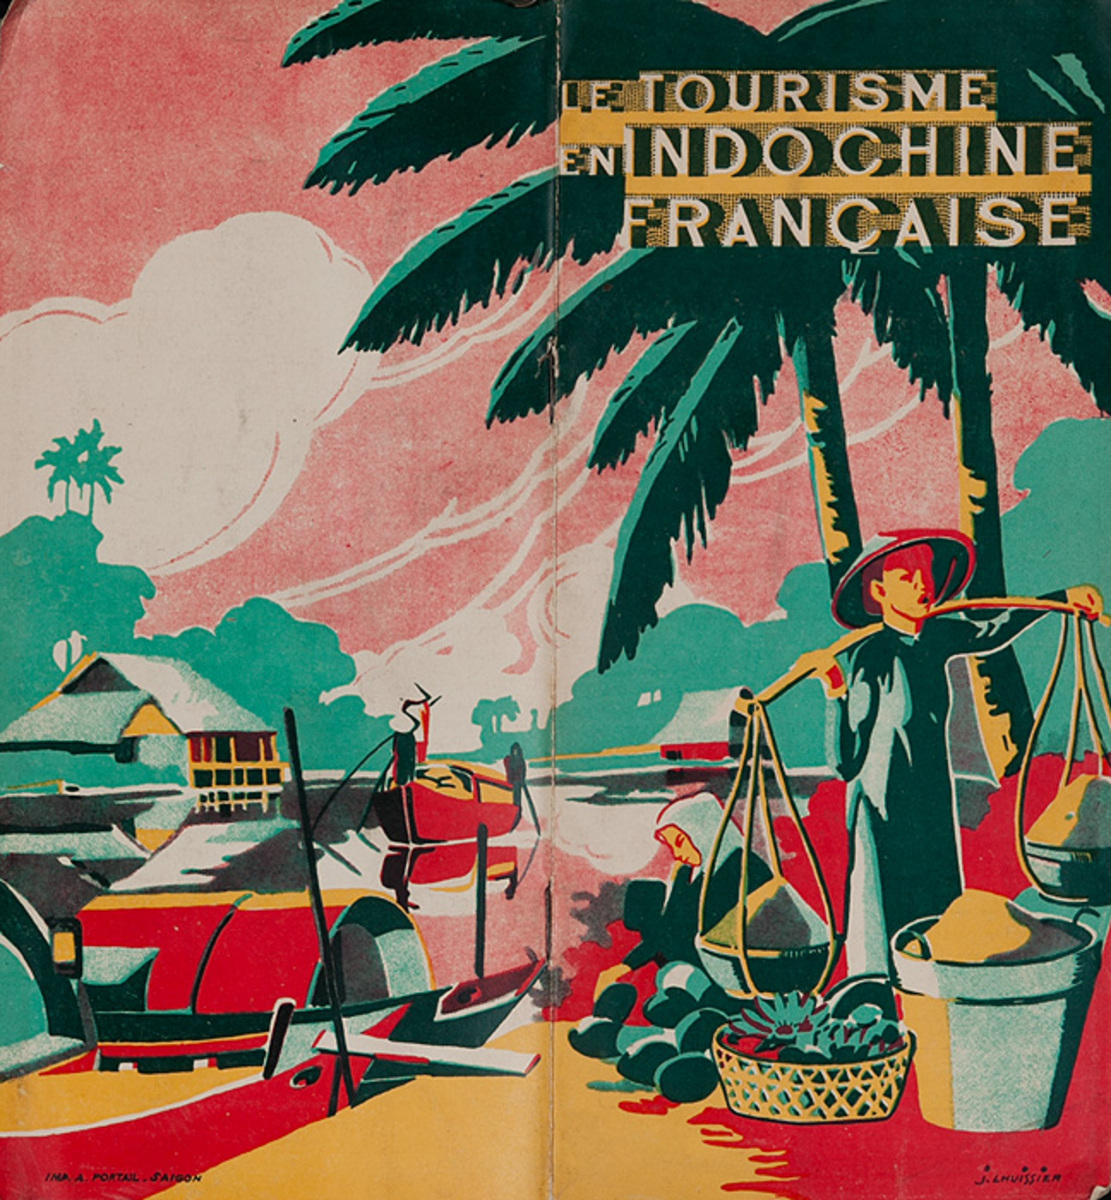 Le Tourisme en Indochine Francaise Original Travel Brochure French Indichine Vietnam